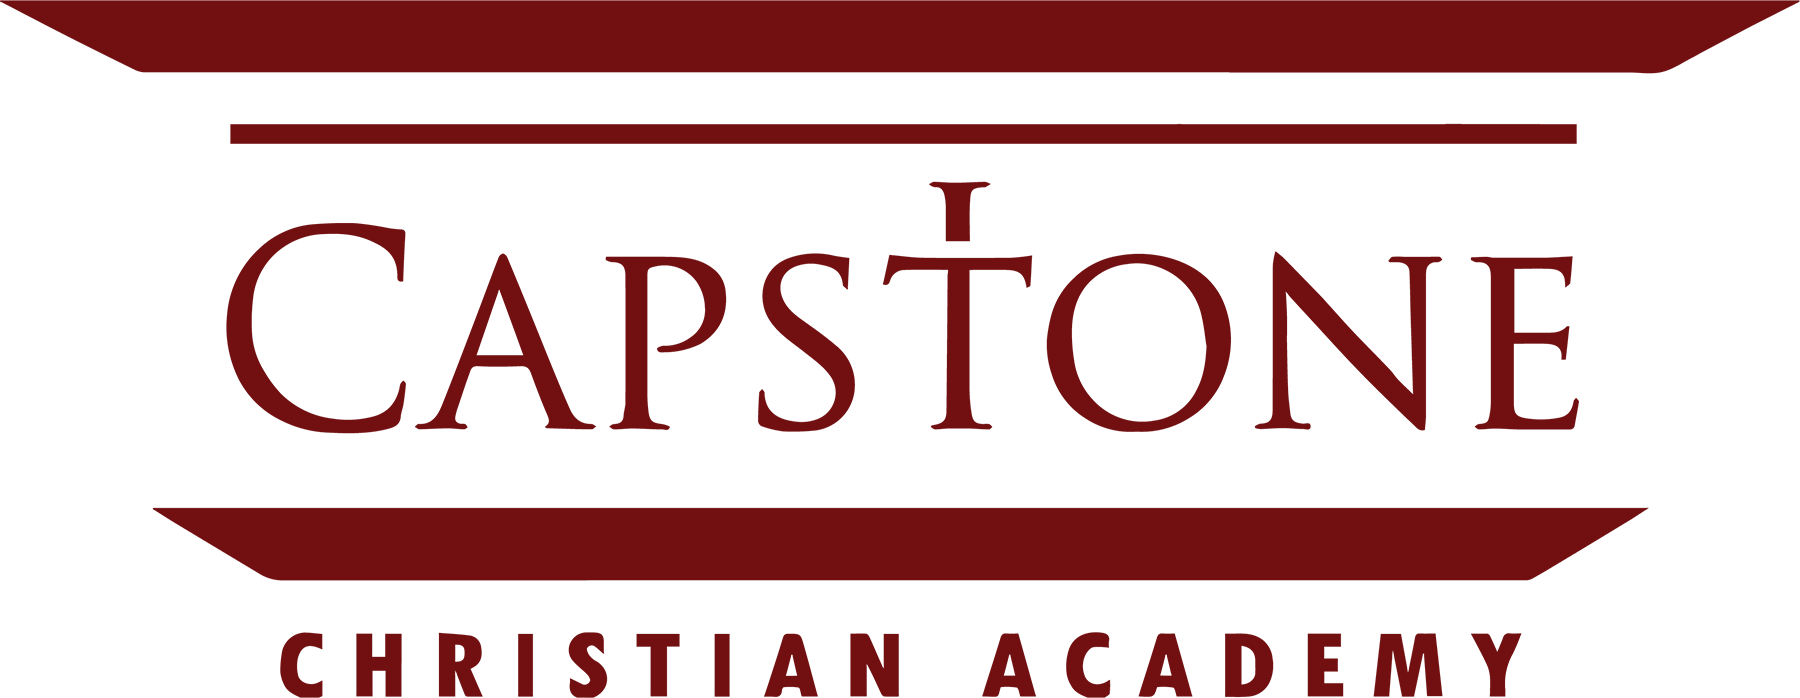 Capstone Christian Academy